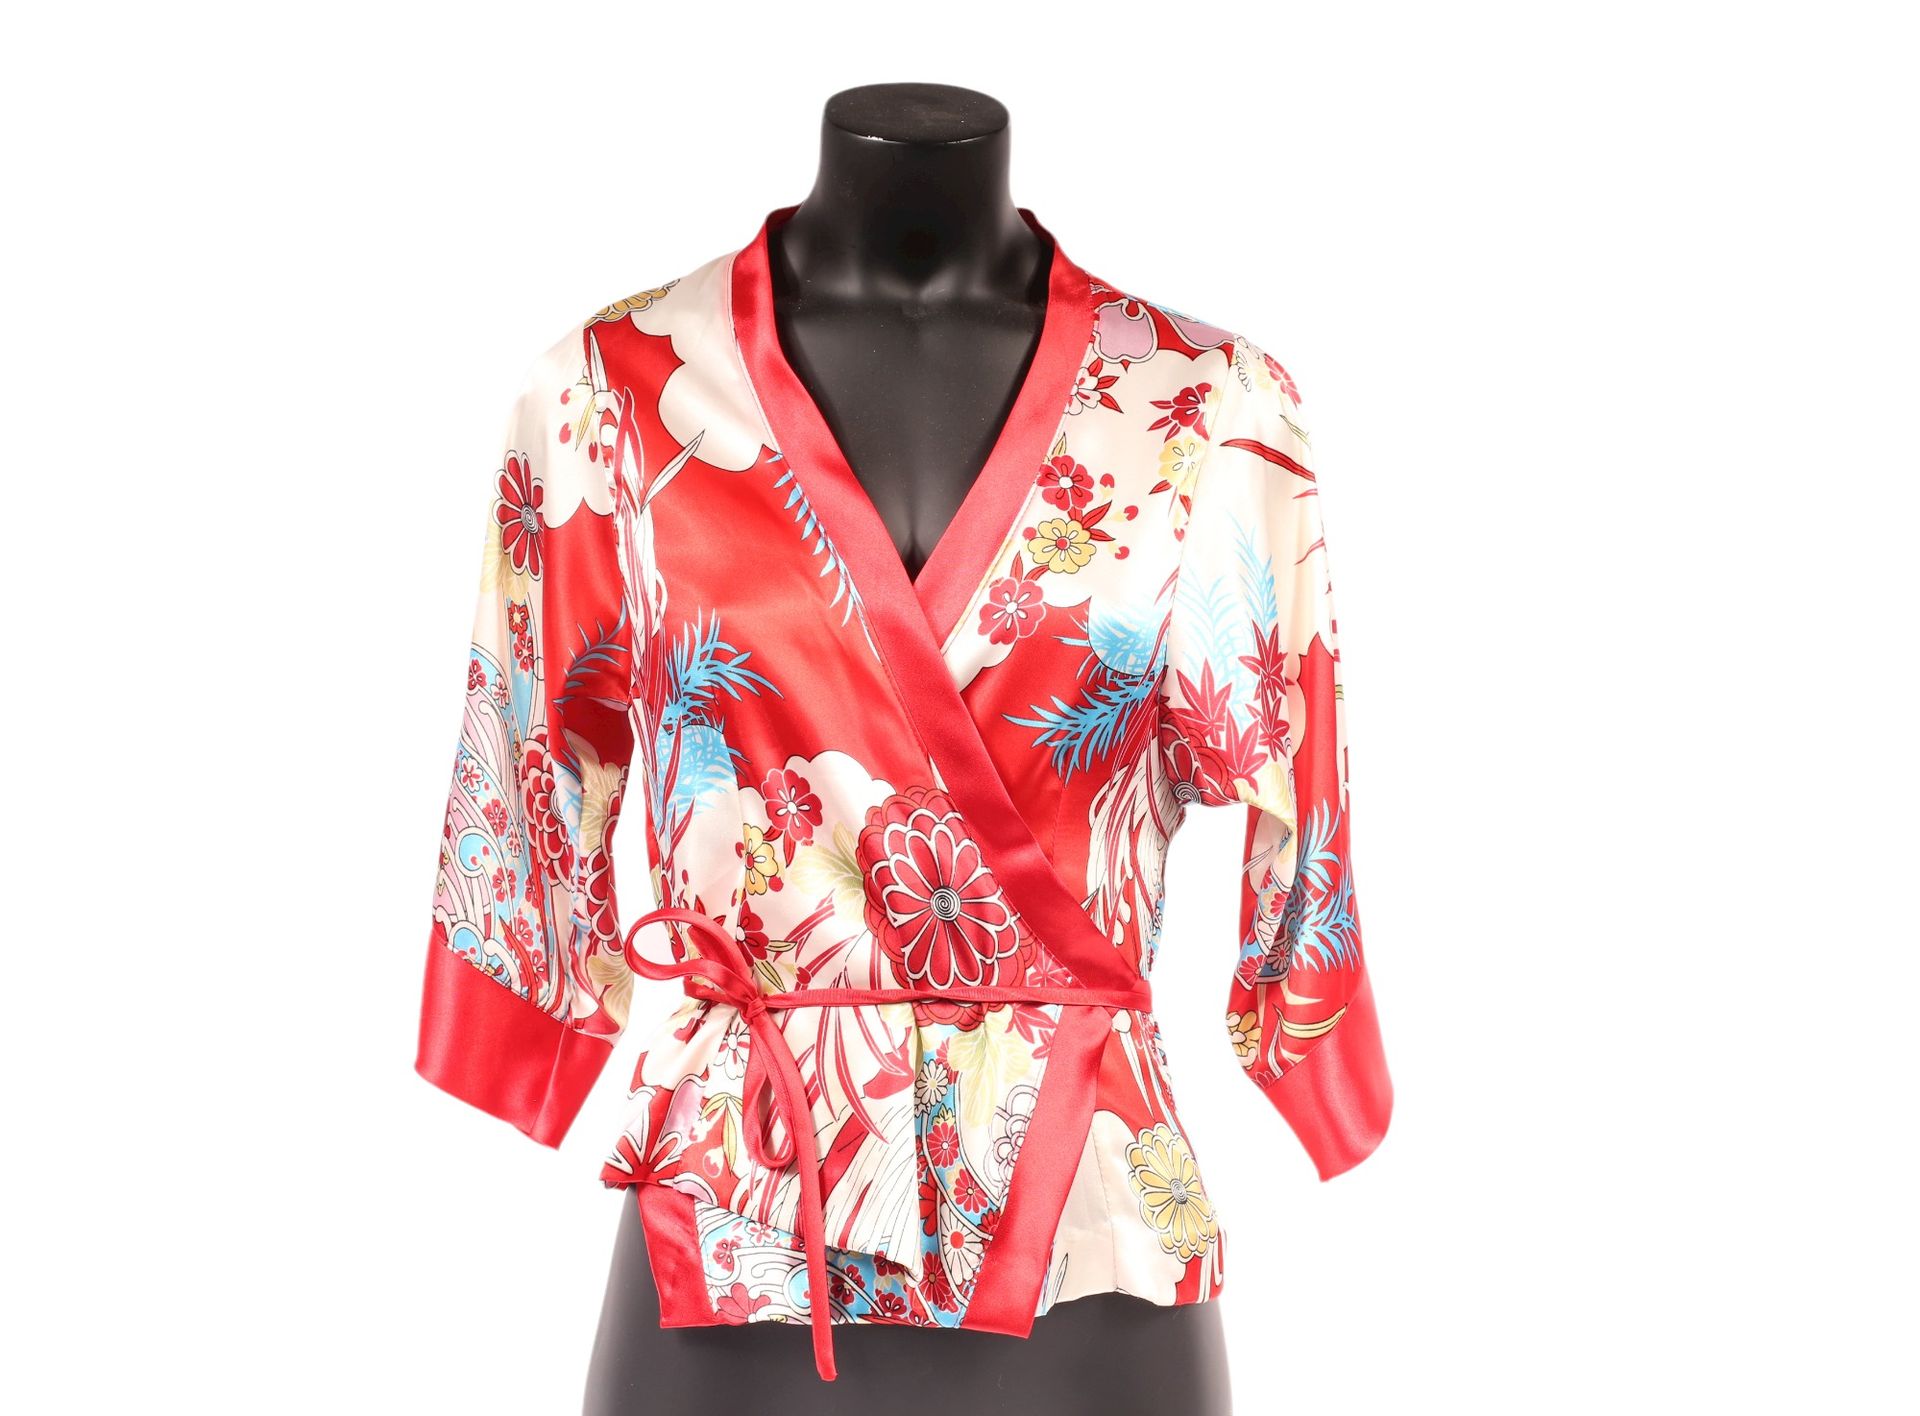 Null * ANONYME

Six vestes kimonos en polyester